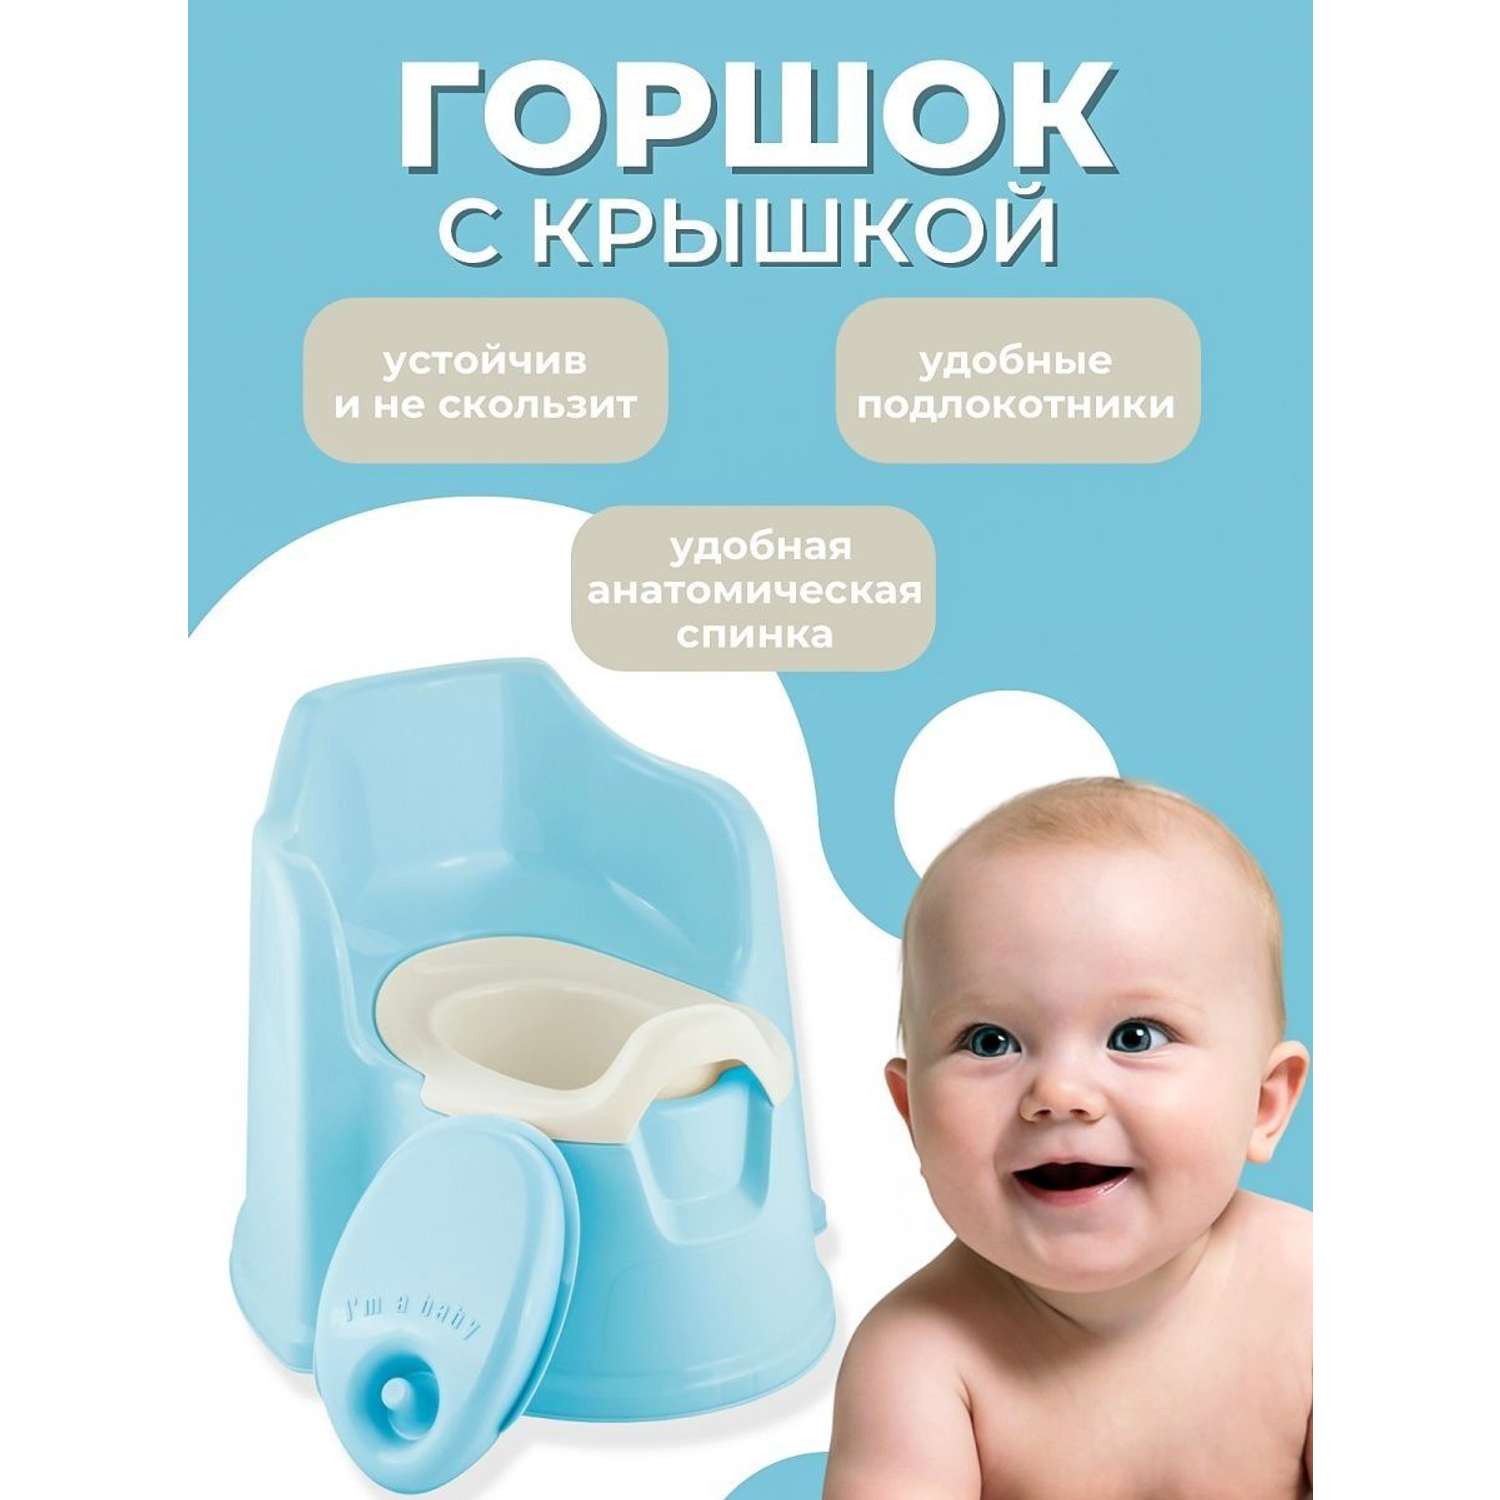 Горшок детский PLASTIC REPABLIC baby с крышкой стульчик пластиковый голубой - фото 2